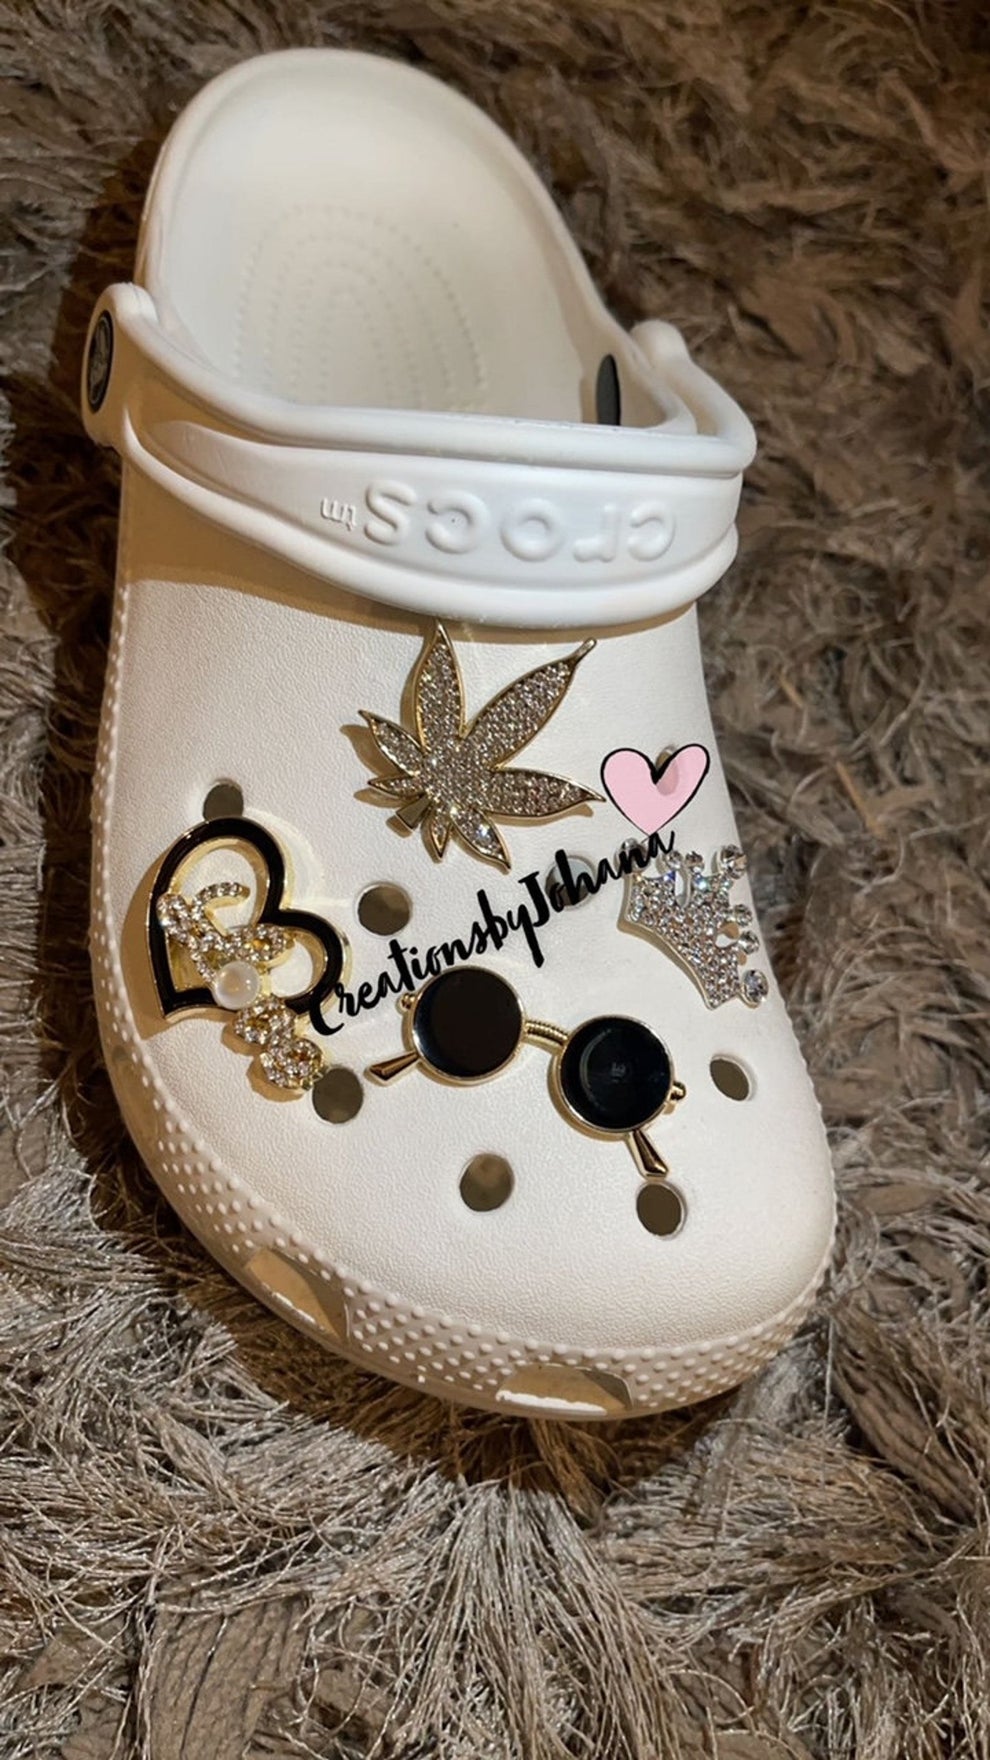 Chanel Crocs Sandals #crocs #crocssandals #crocscharms #chanel #glam #